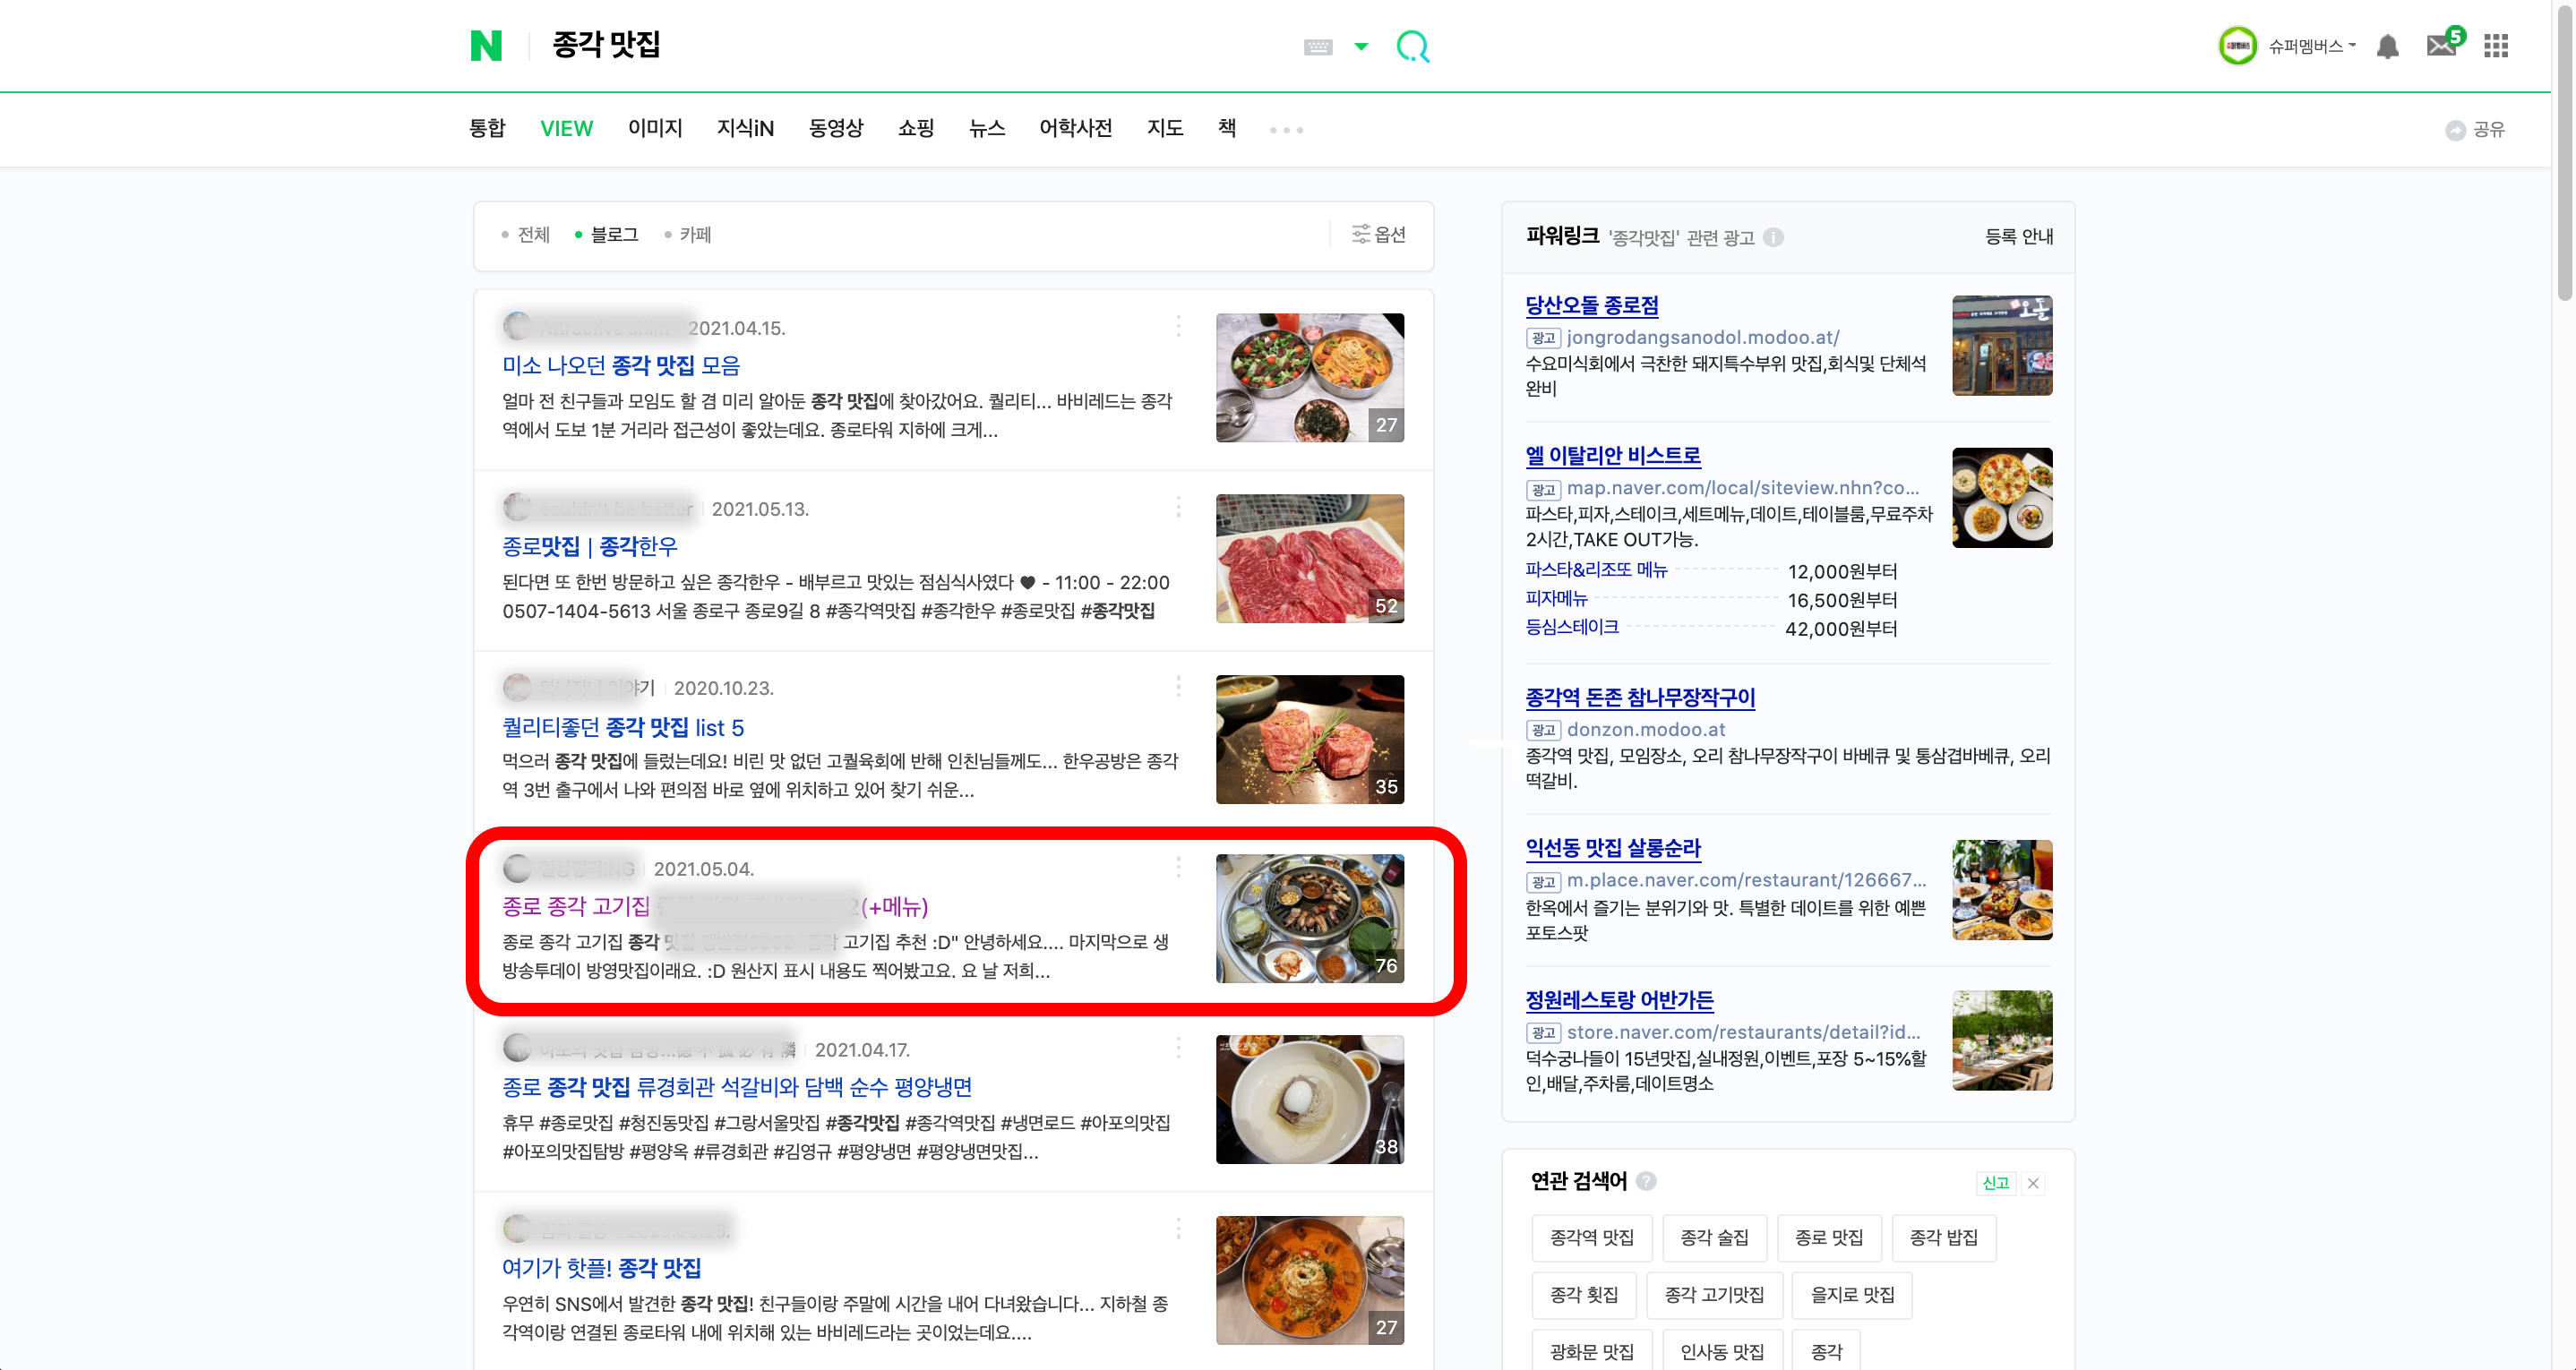 네이버에서 24만원으로 종각 맛집 키워드 상위노출시키기